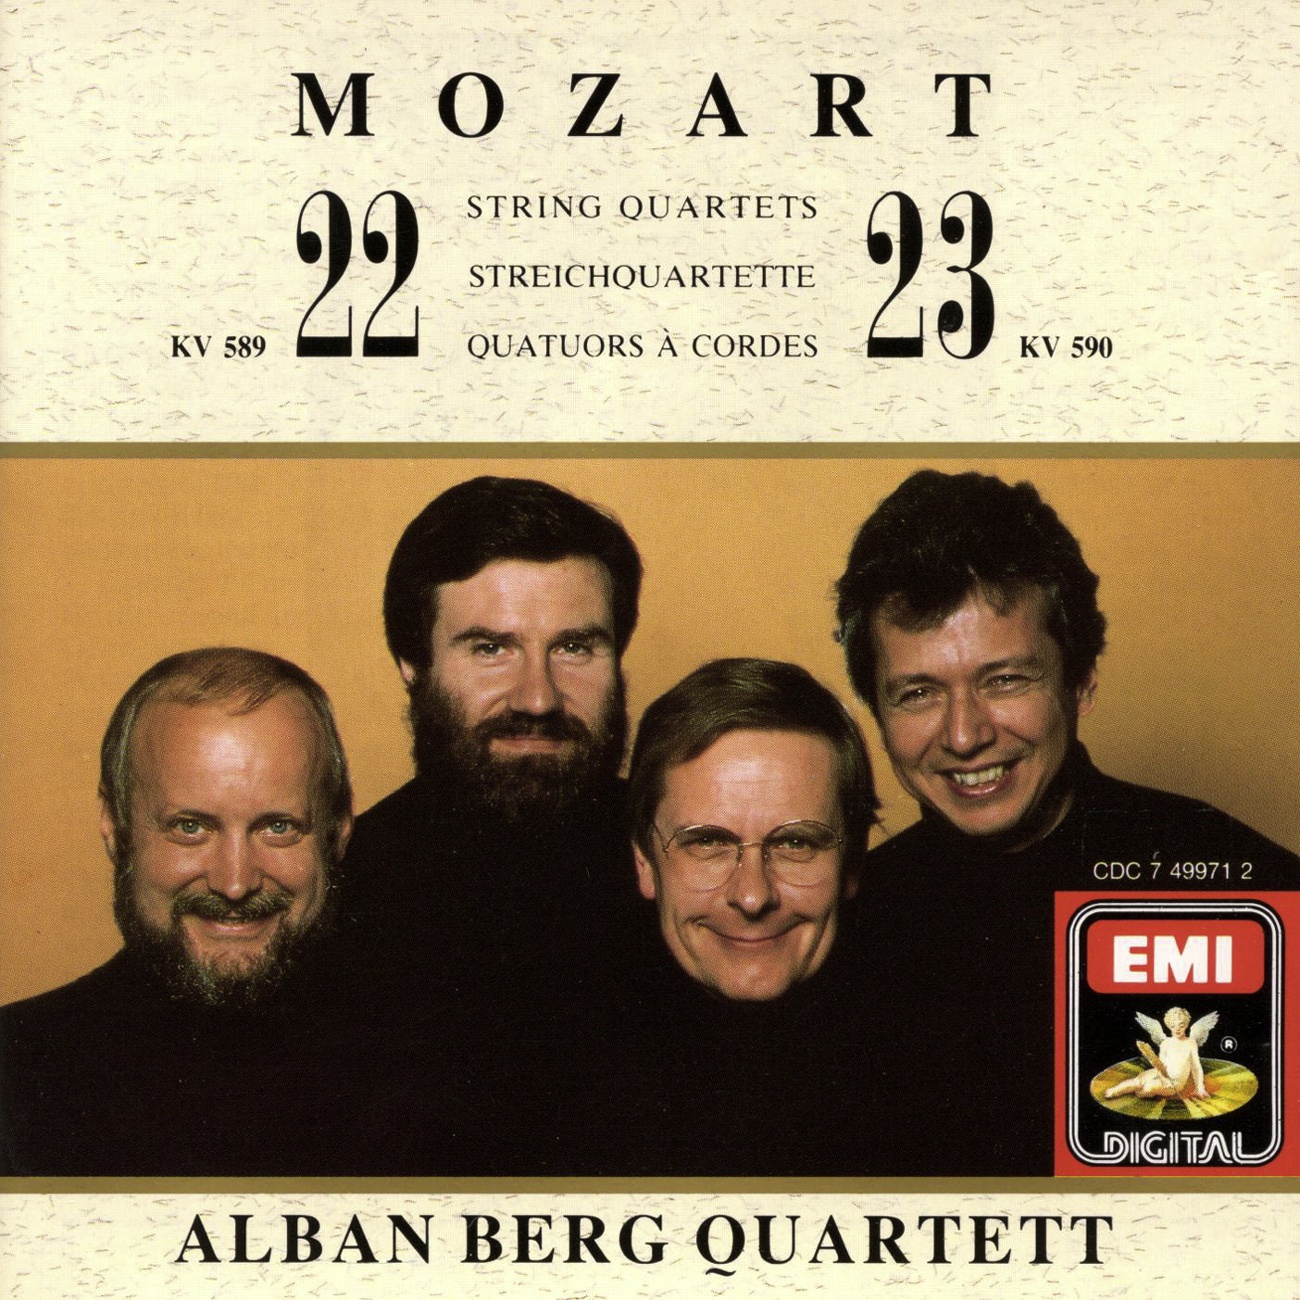 1er Mvt Allegro (String Quartet N22 K589)